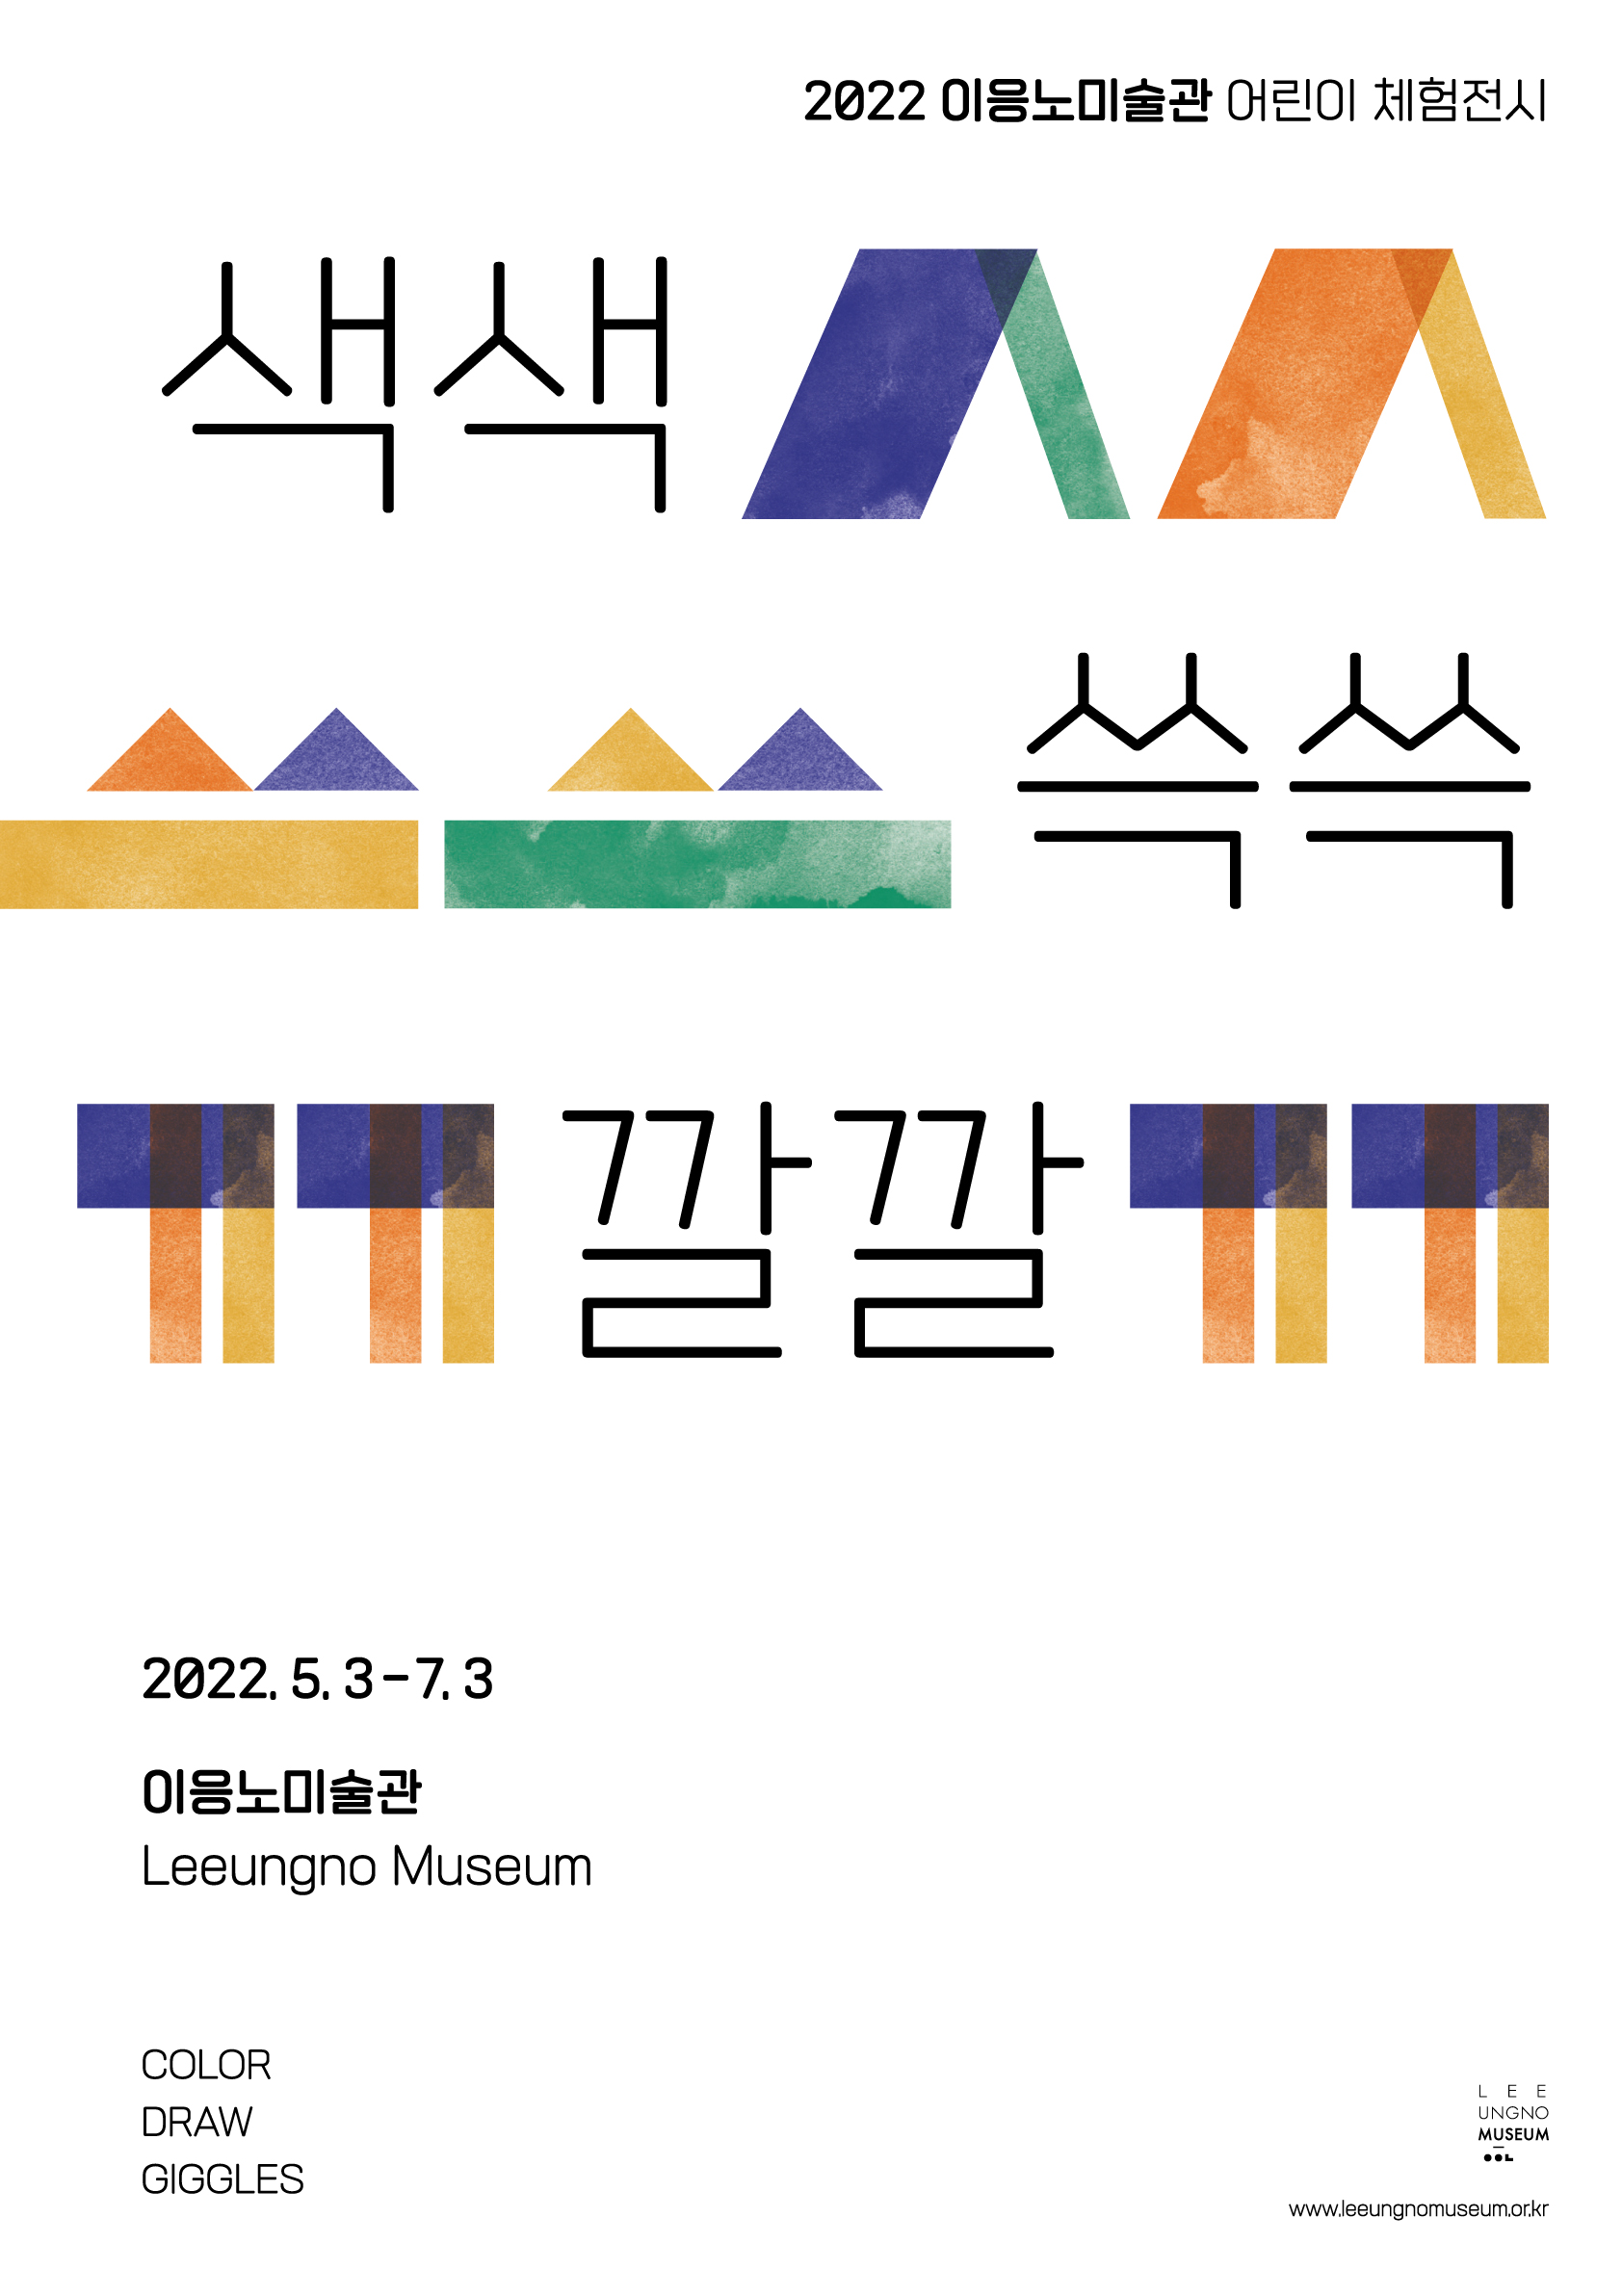 2022 이응노미술관 어린이 체험전 <색색 쓱쓱 깔깔>